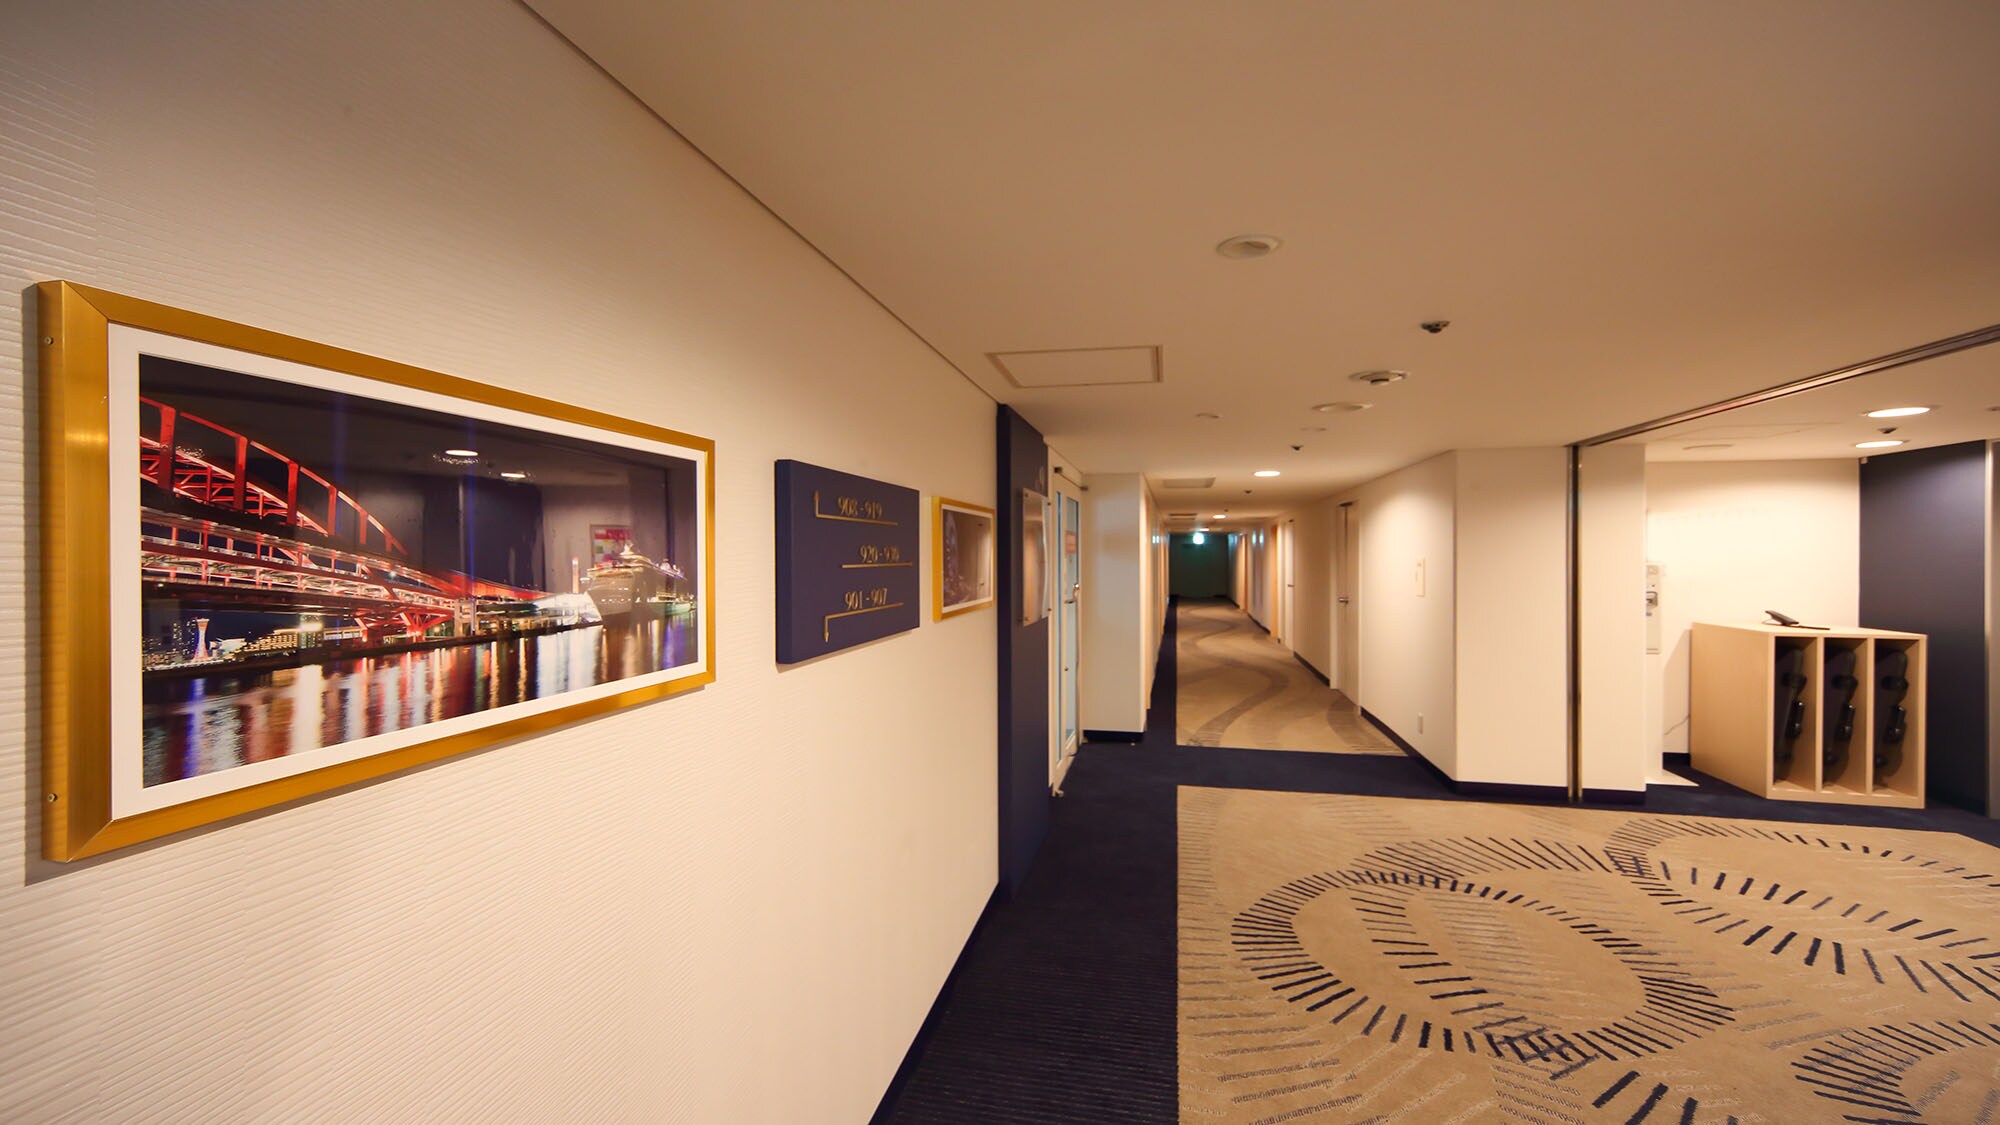  Standard floor elevator front corridor